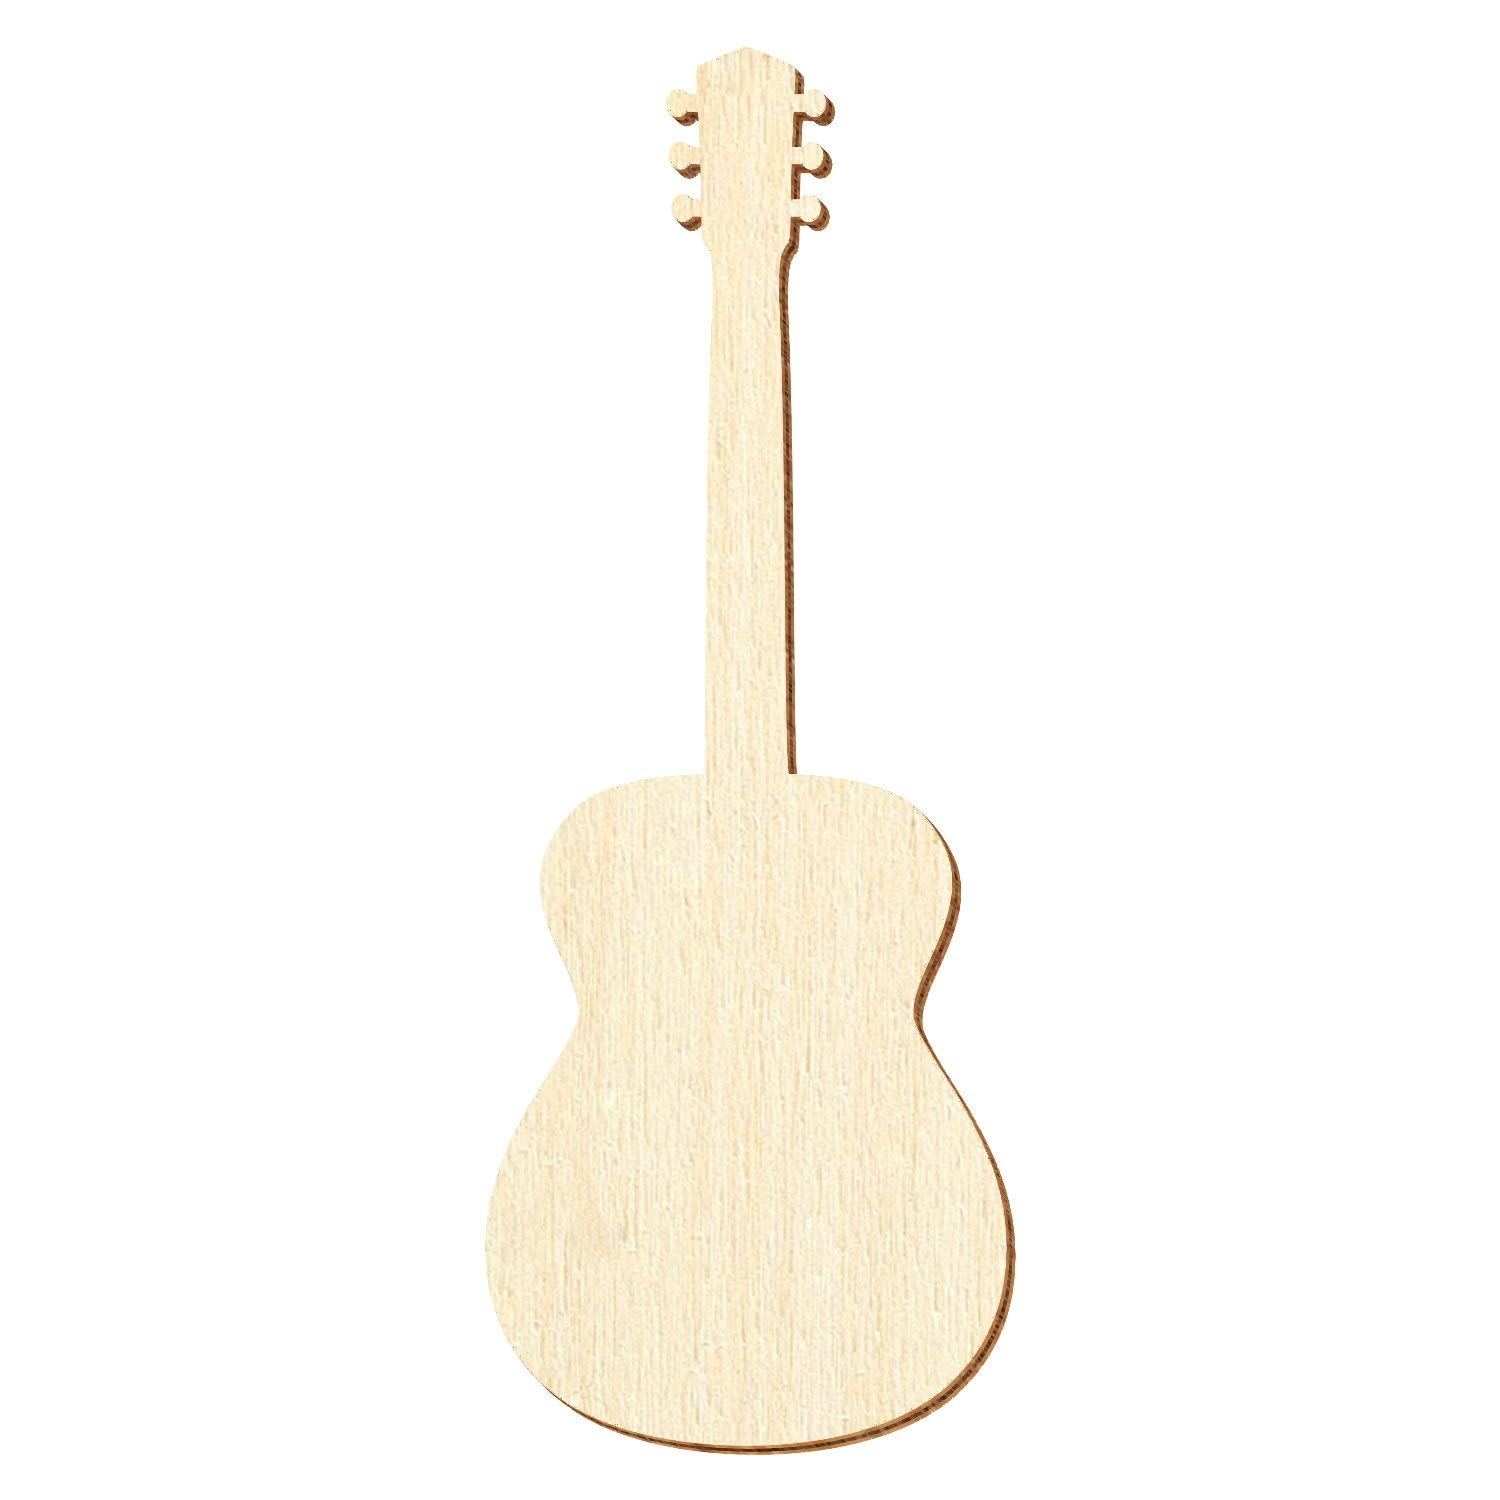 Holz Akustikgitarre - Deko Zuschnitte Größenauswahl, Pack mit:10 Stück, Größe:38cm